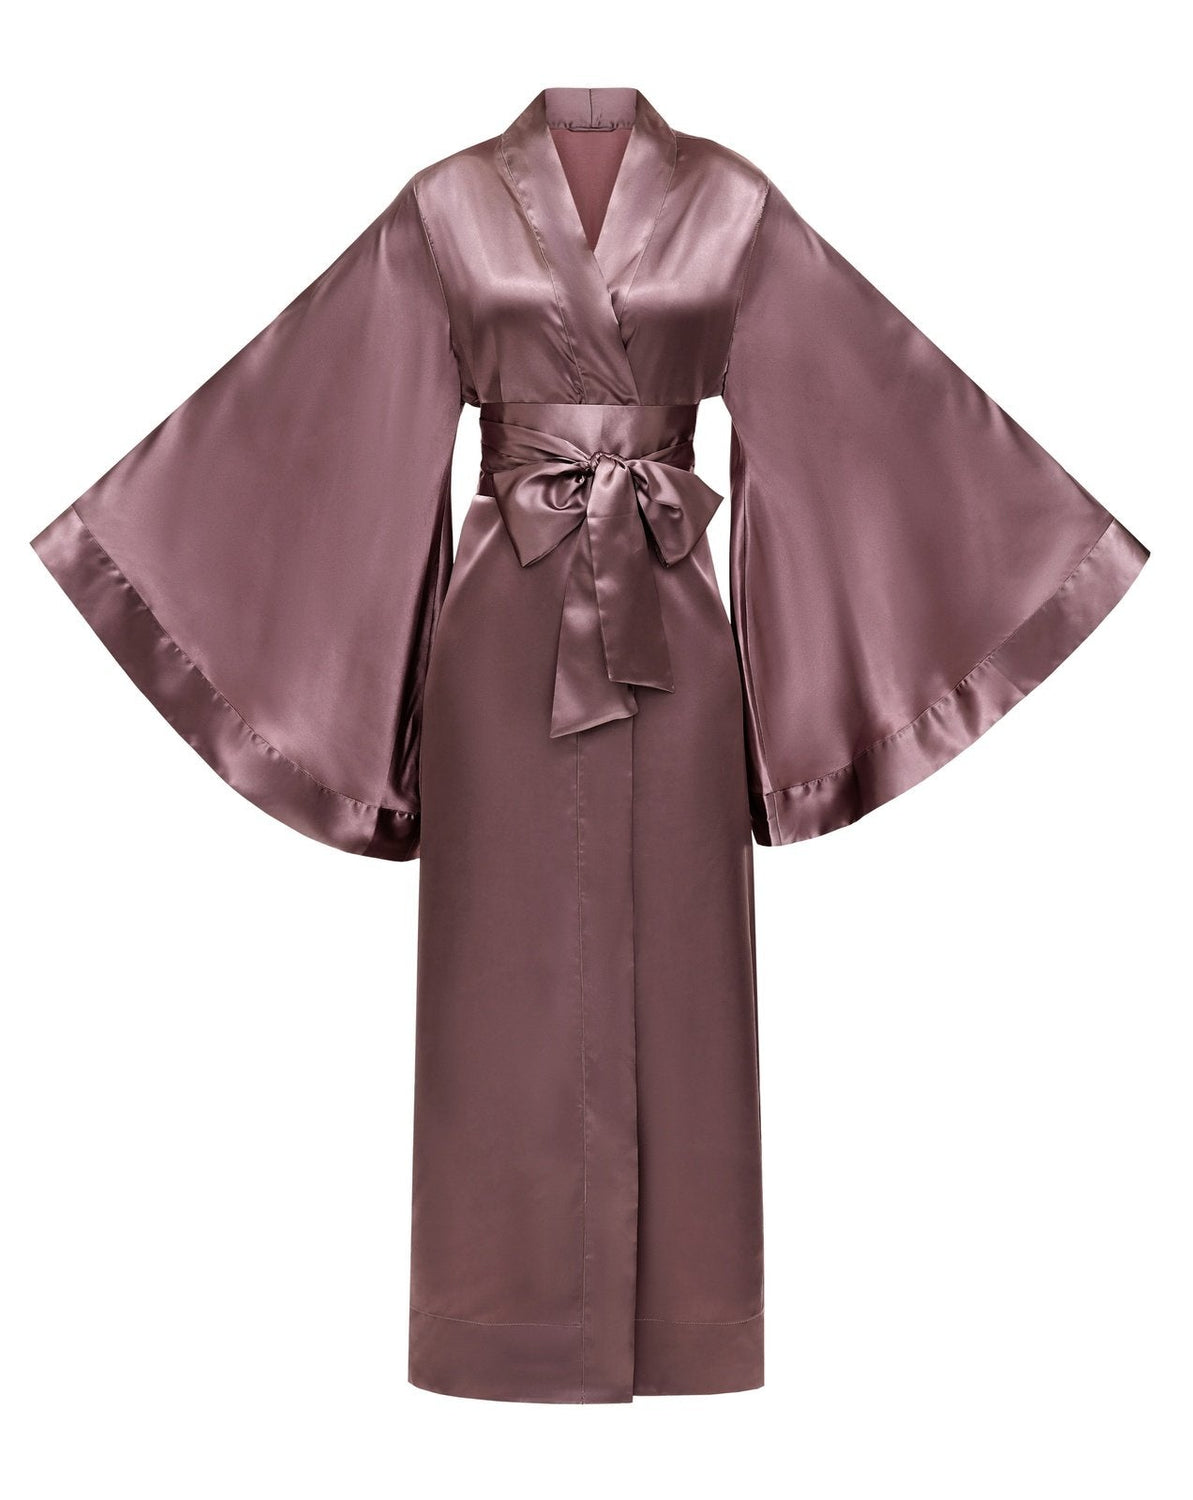 Kimono – Robe|Silk Long Robe|Luxury KÂfemme Satin Kimono Robes